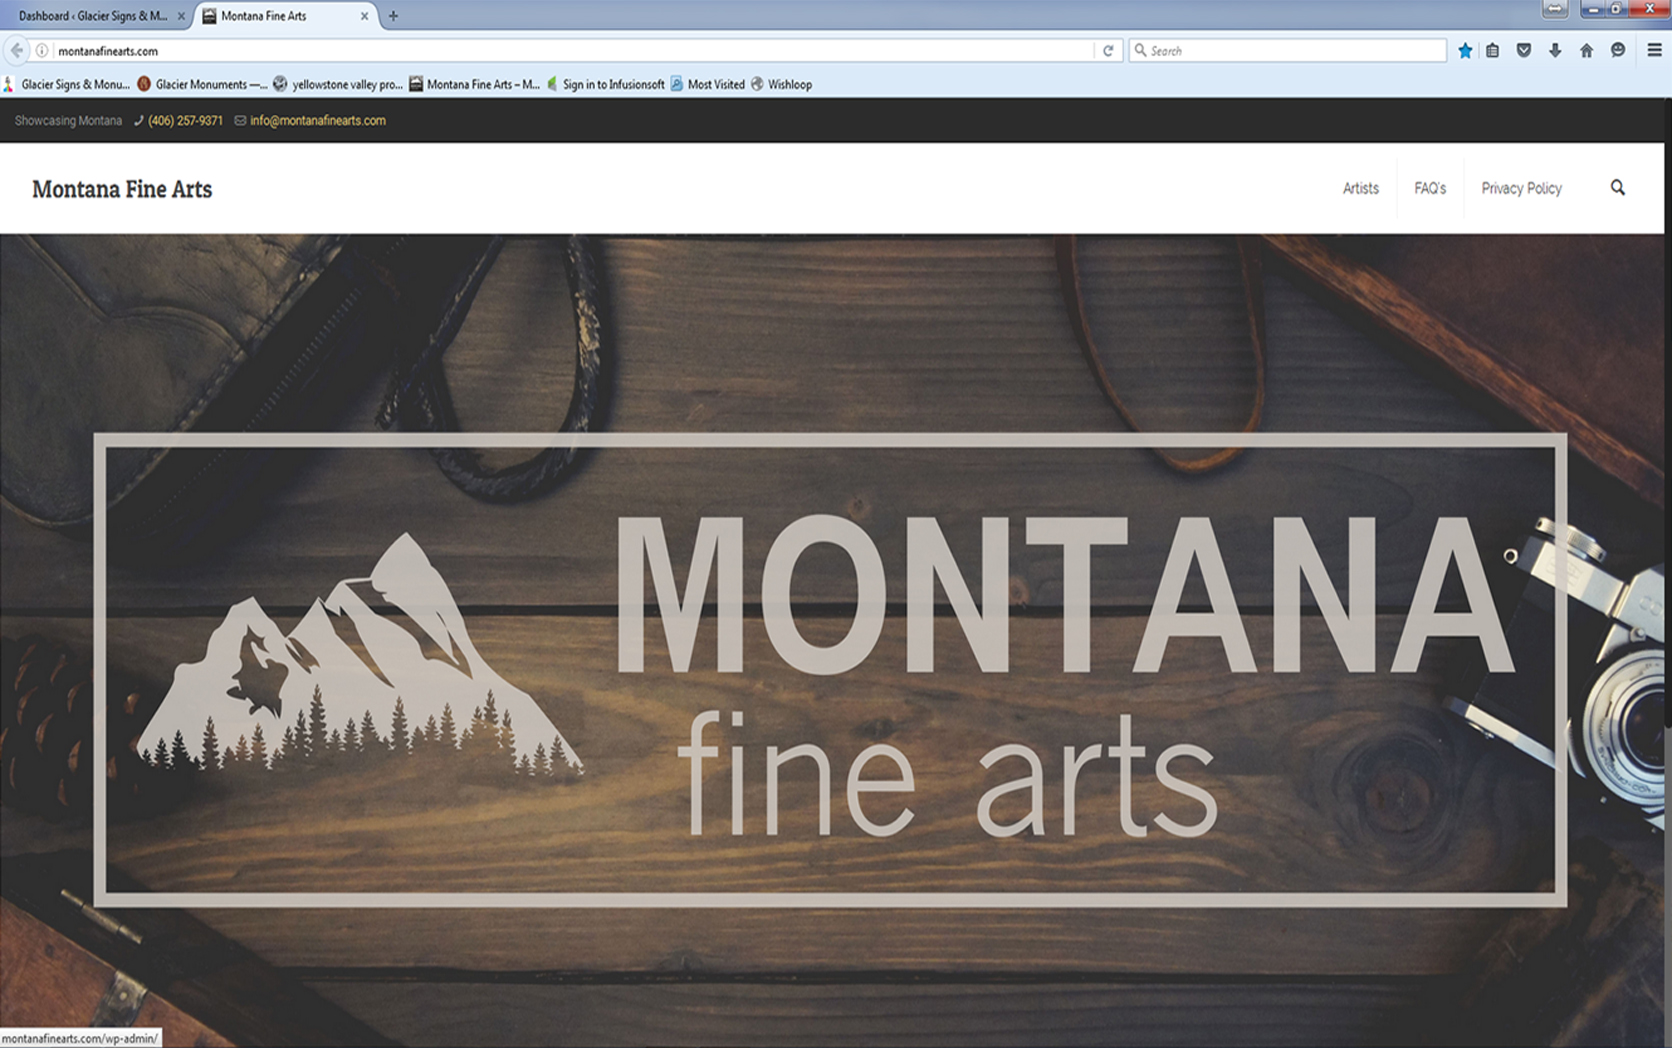 Montana Fine Arts